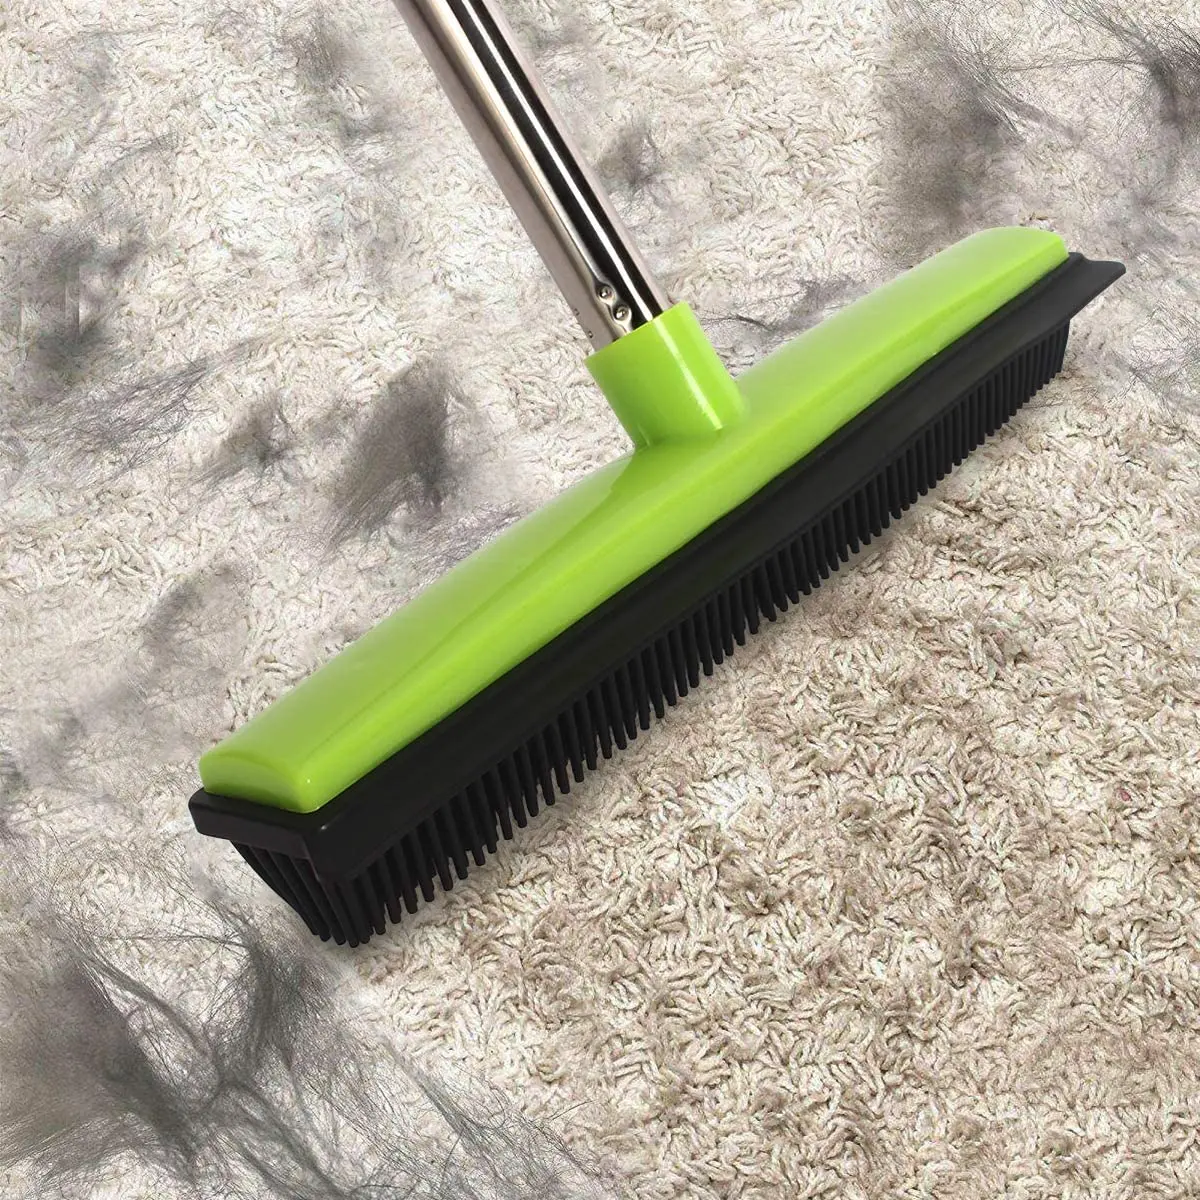 Tierhaar Gummi Besen Boden bürste für Teppich Hund Haarentferner mit  eingebauten Rakel Silikon Mini Besen Haarentferner Reinigung - AliExpress